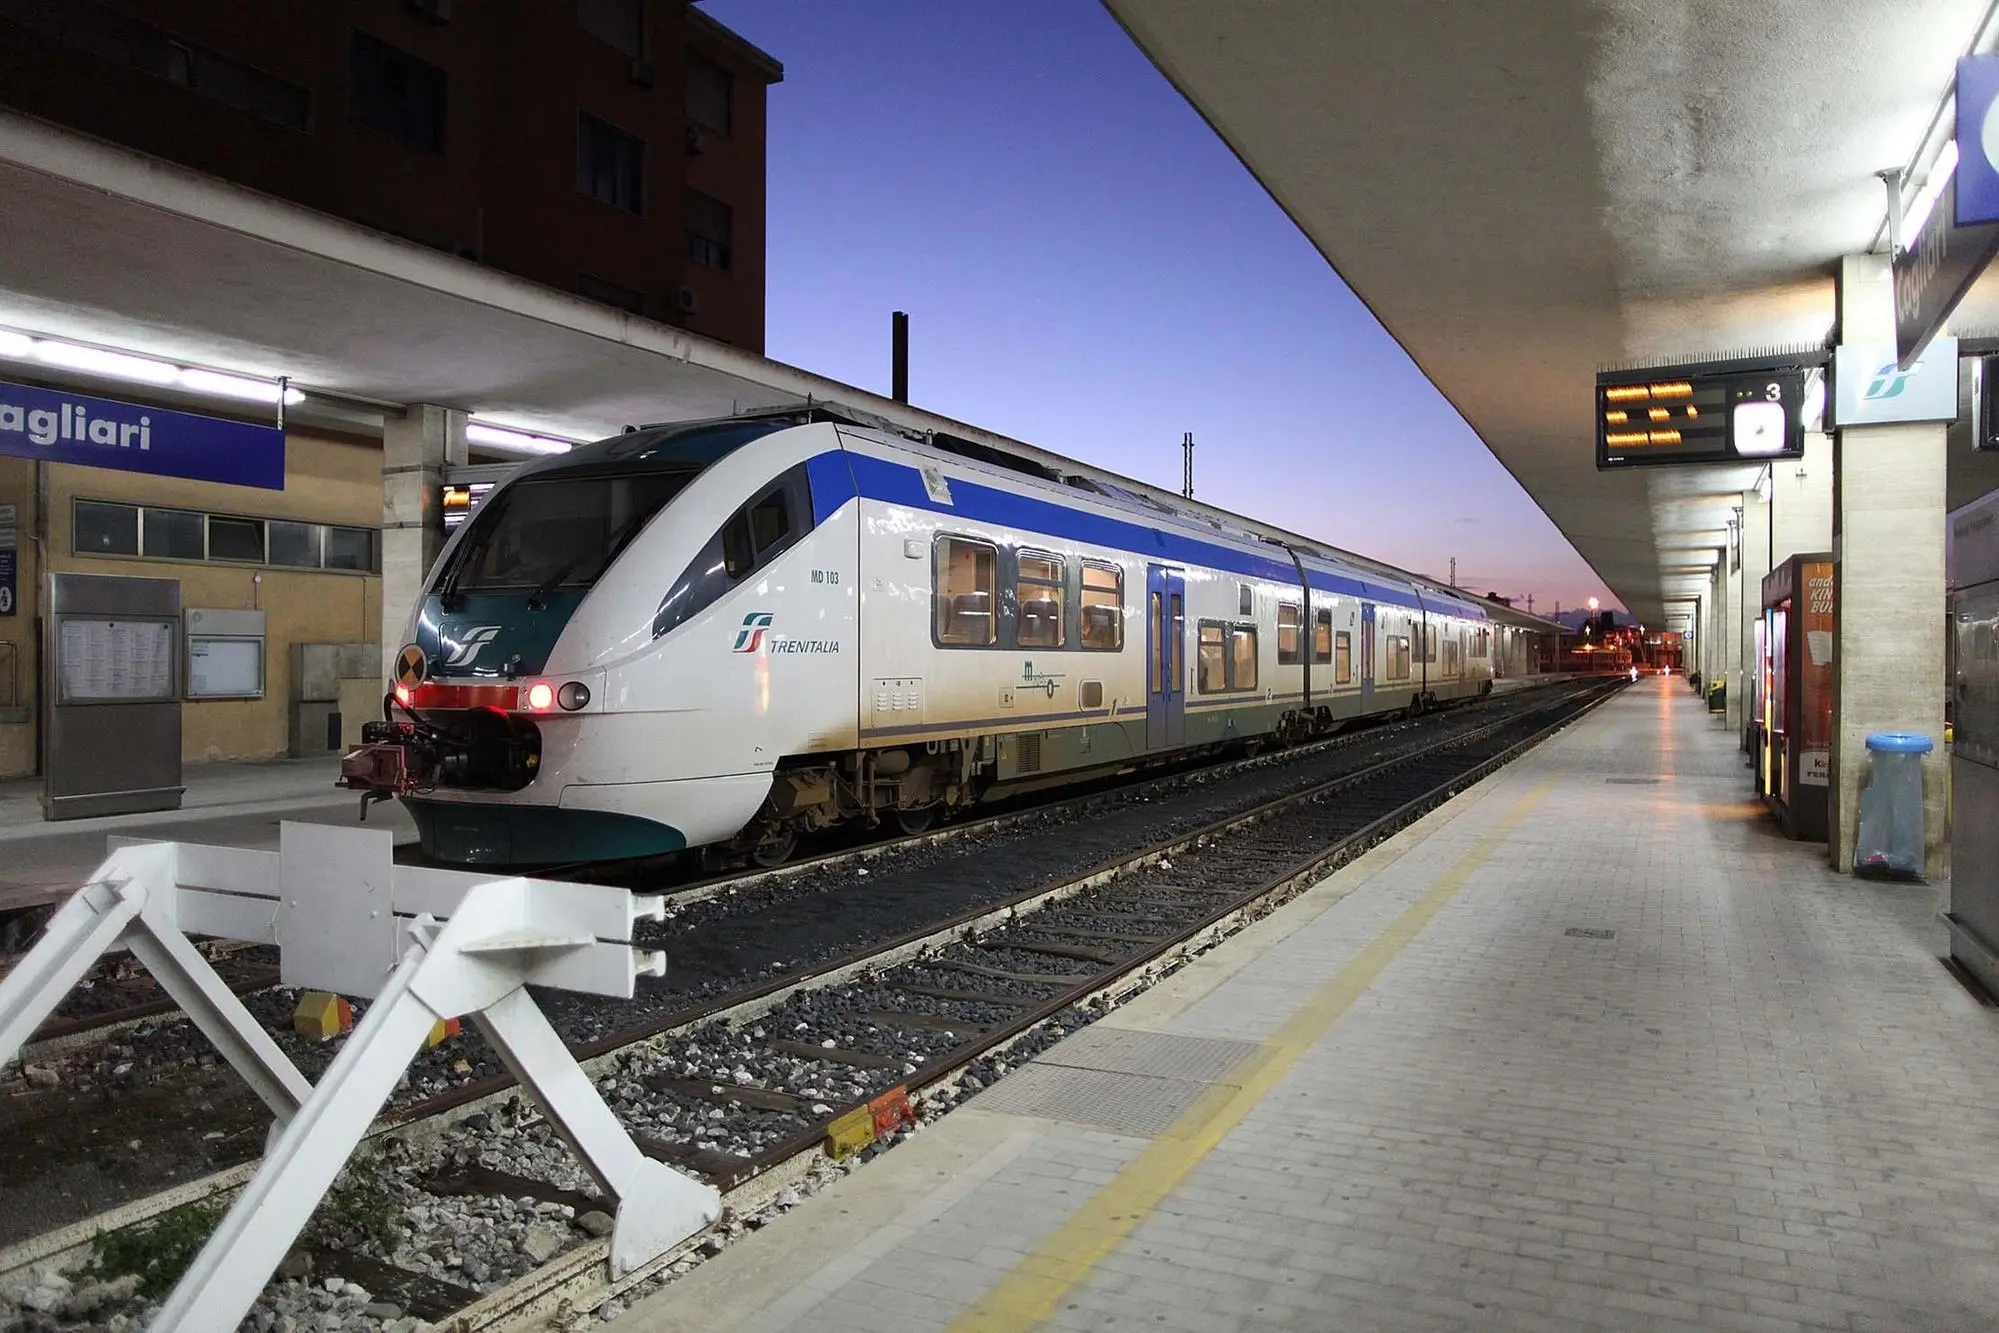 A train stopped in a station in Cagliari (Archivio9